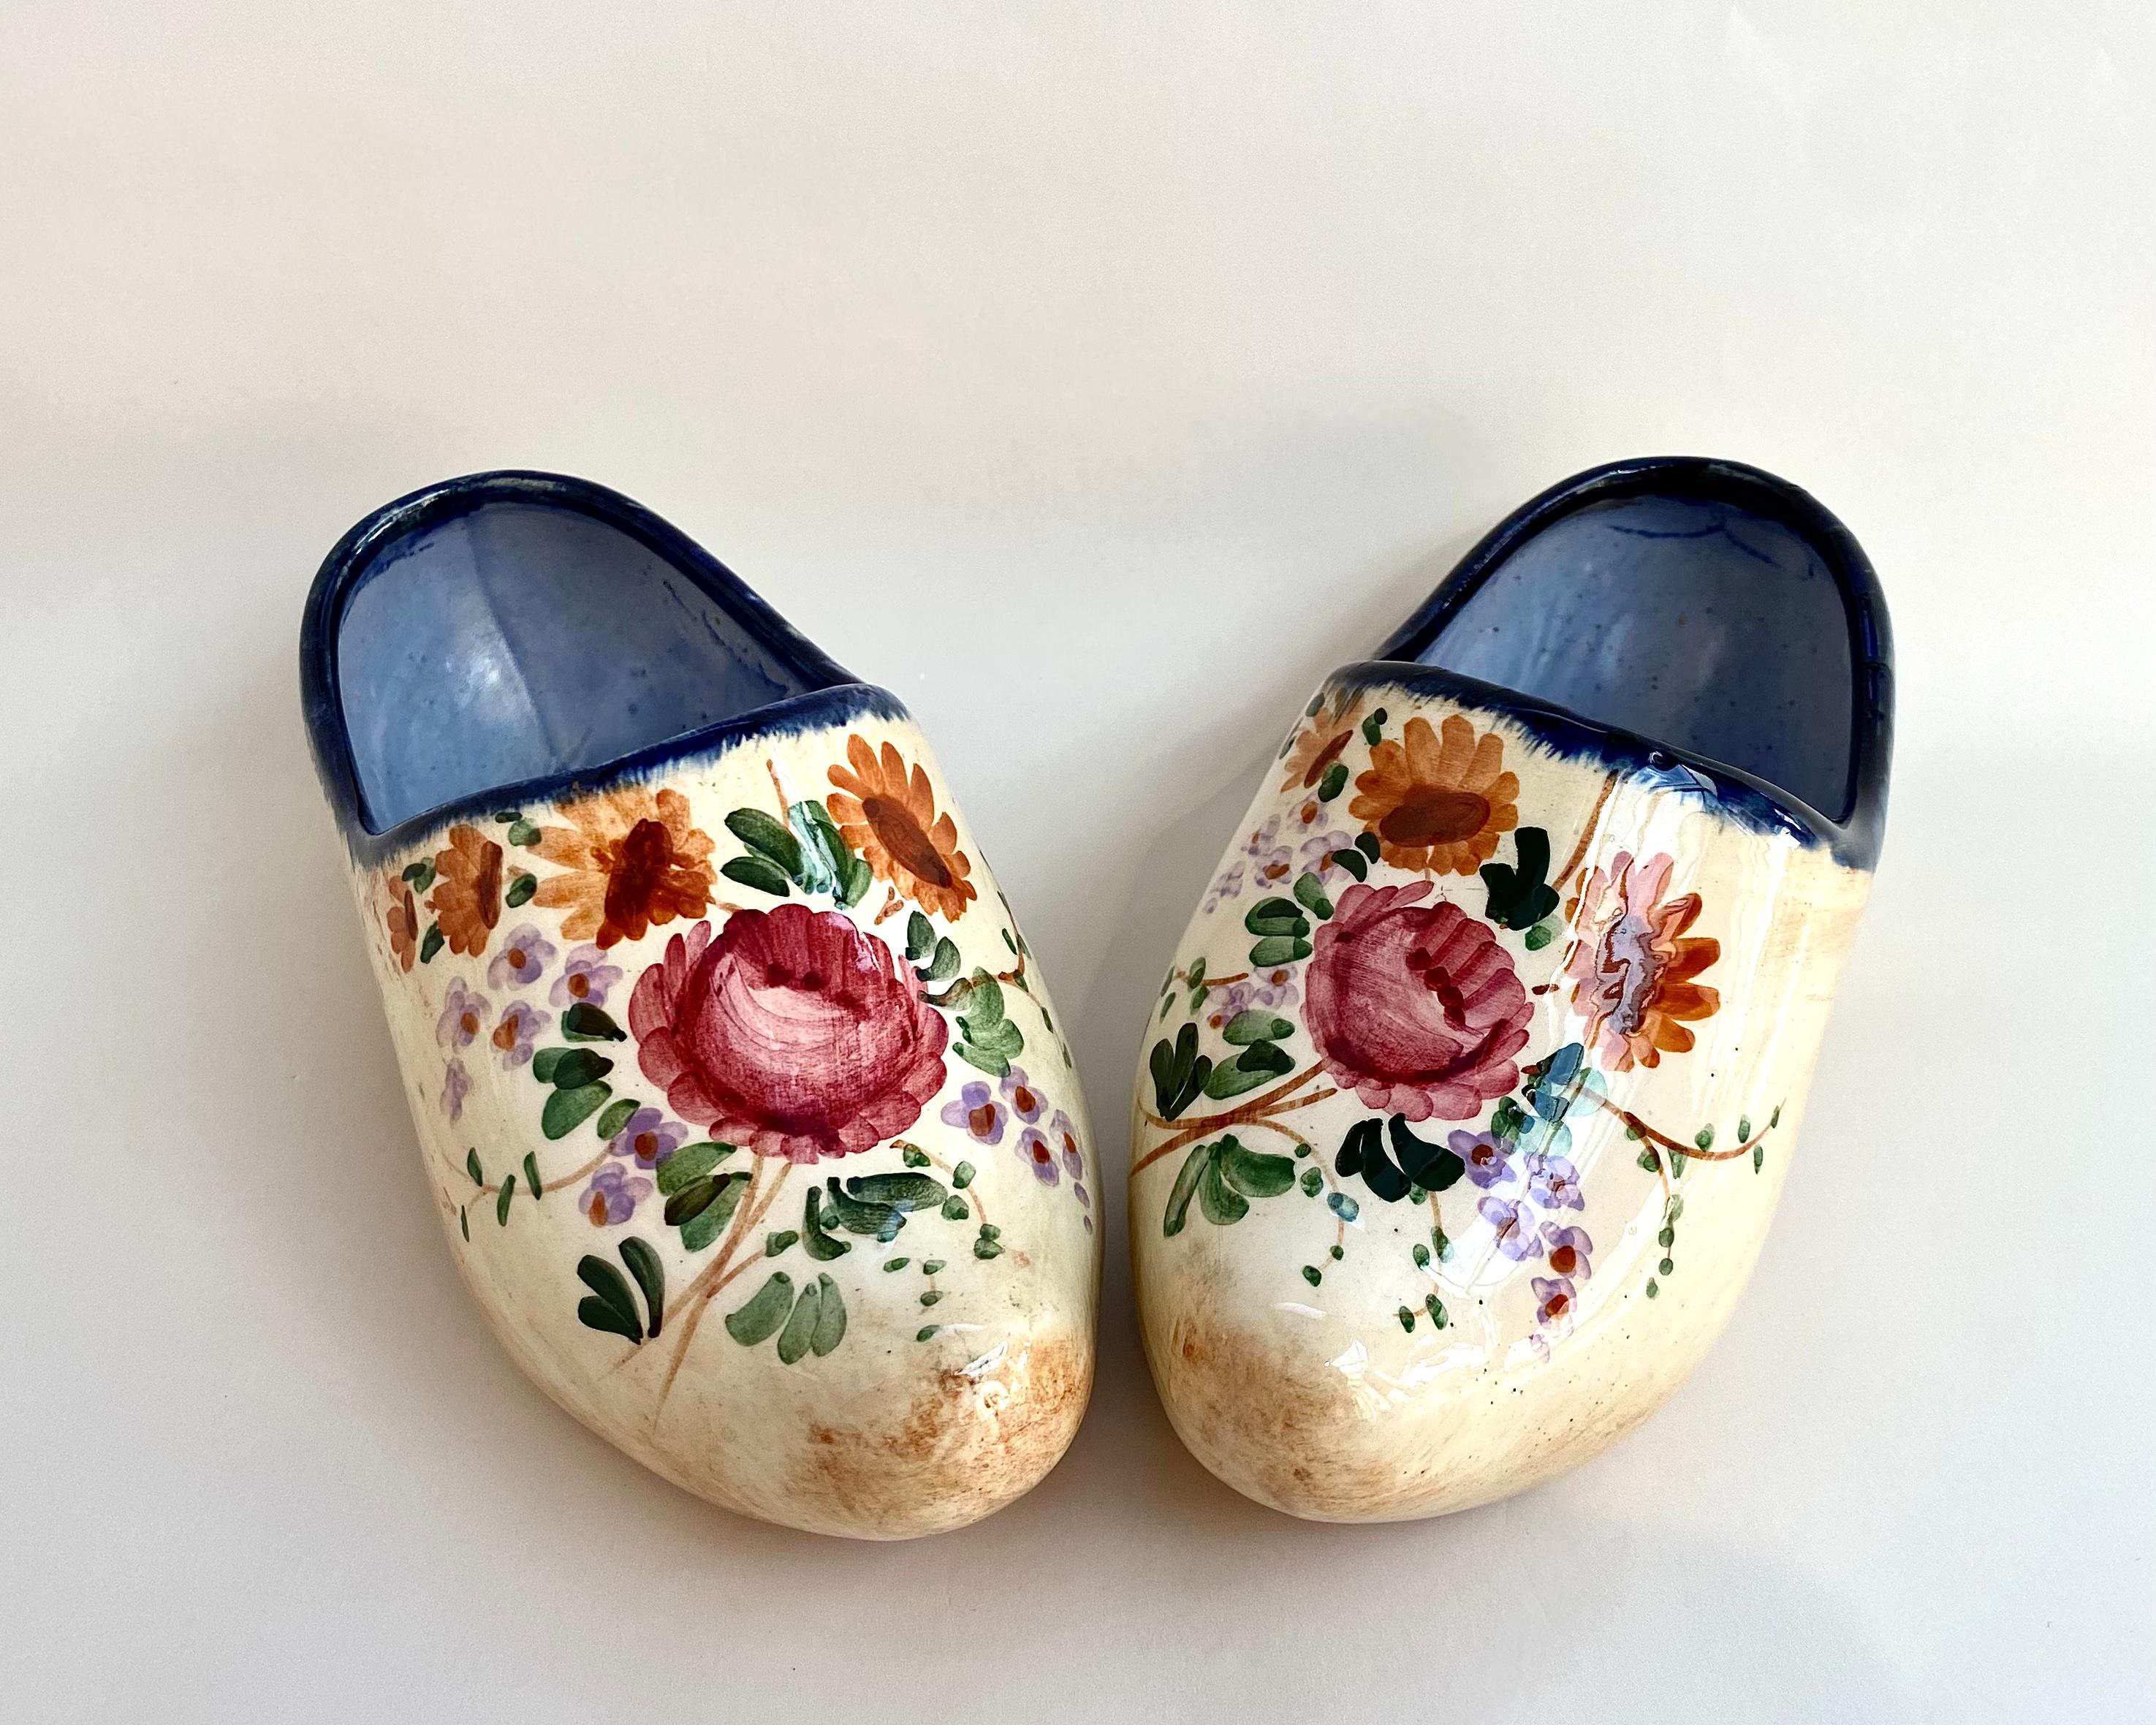 Une charmante paire de chaussures vintage créée sous la forme de sabots traditionnels.

Belgique, années 1960.

Les chaussures décoratives miniatures ont été fabriquées en porcelaine belge émaillée et présentent des motifs de fleurs et de feuilles